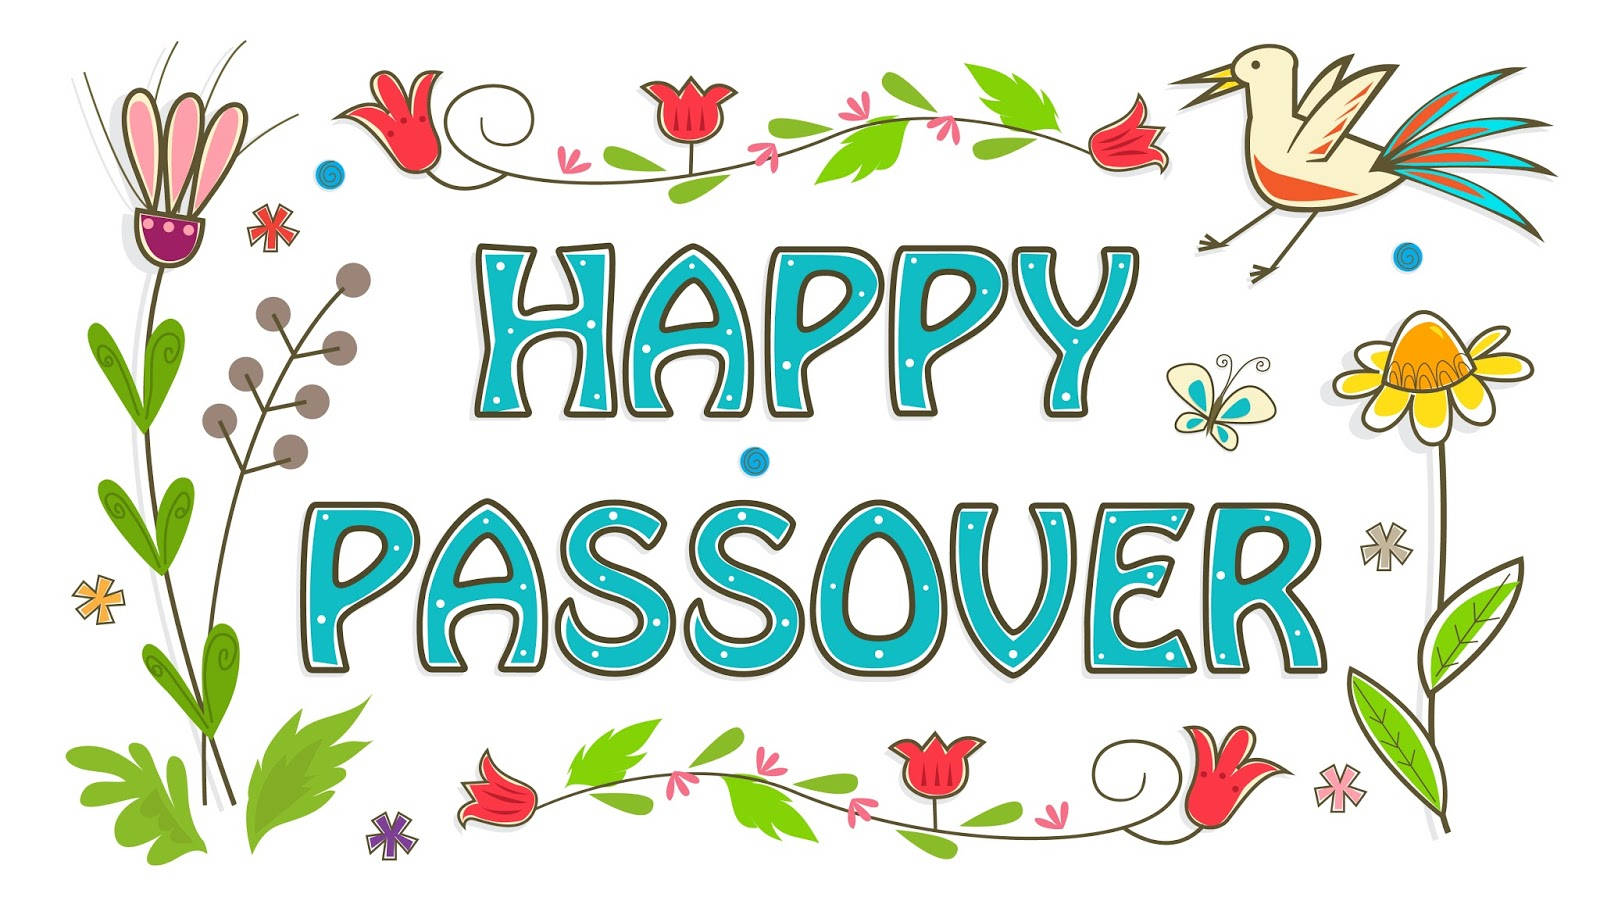 Passover Flower Art Wallpaper